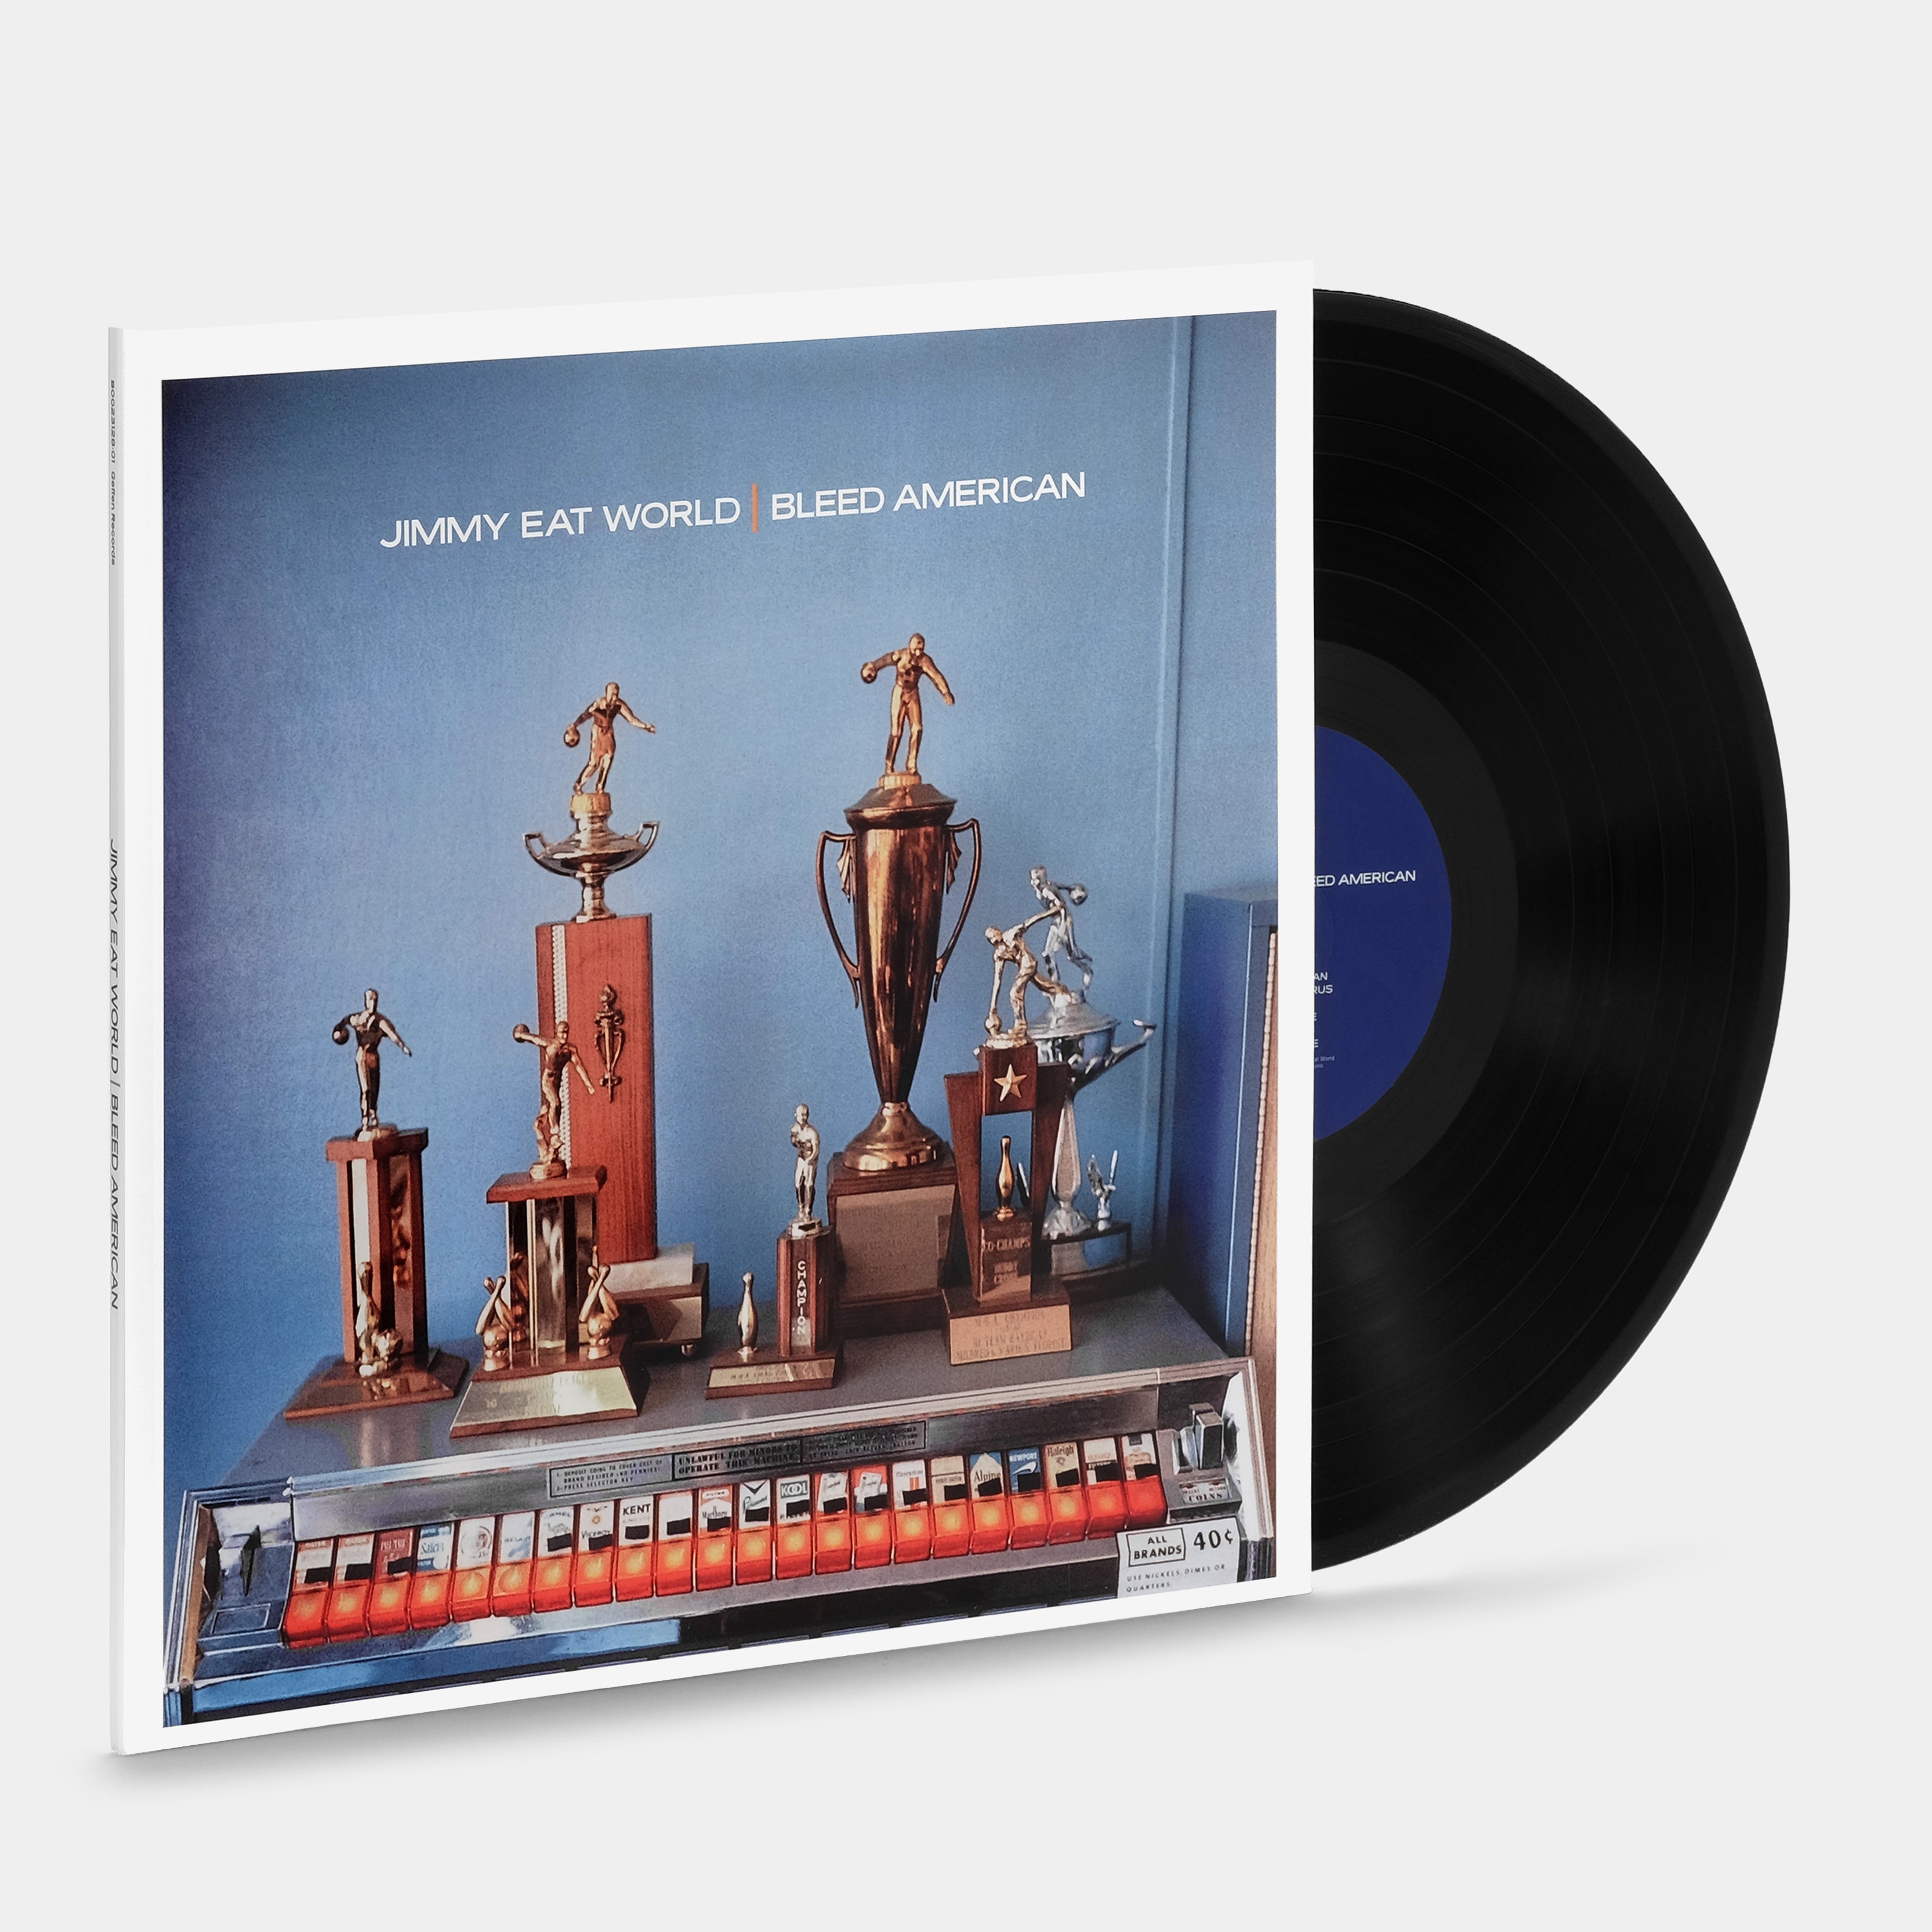 Jimmy Eat World - Clarity 2xLP Vinyl Record